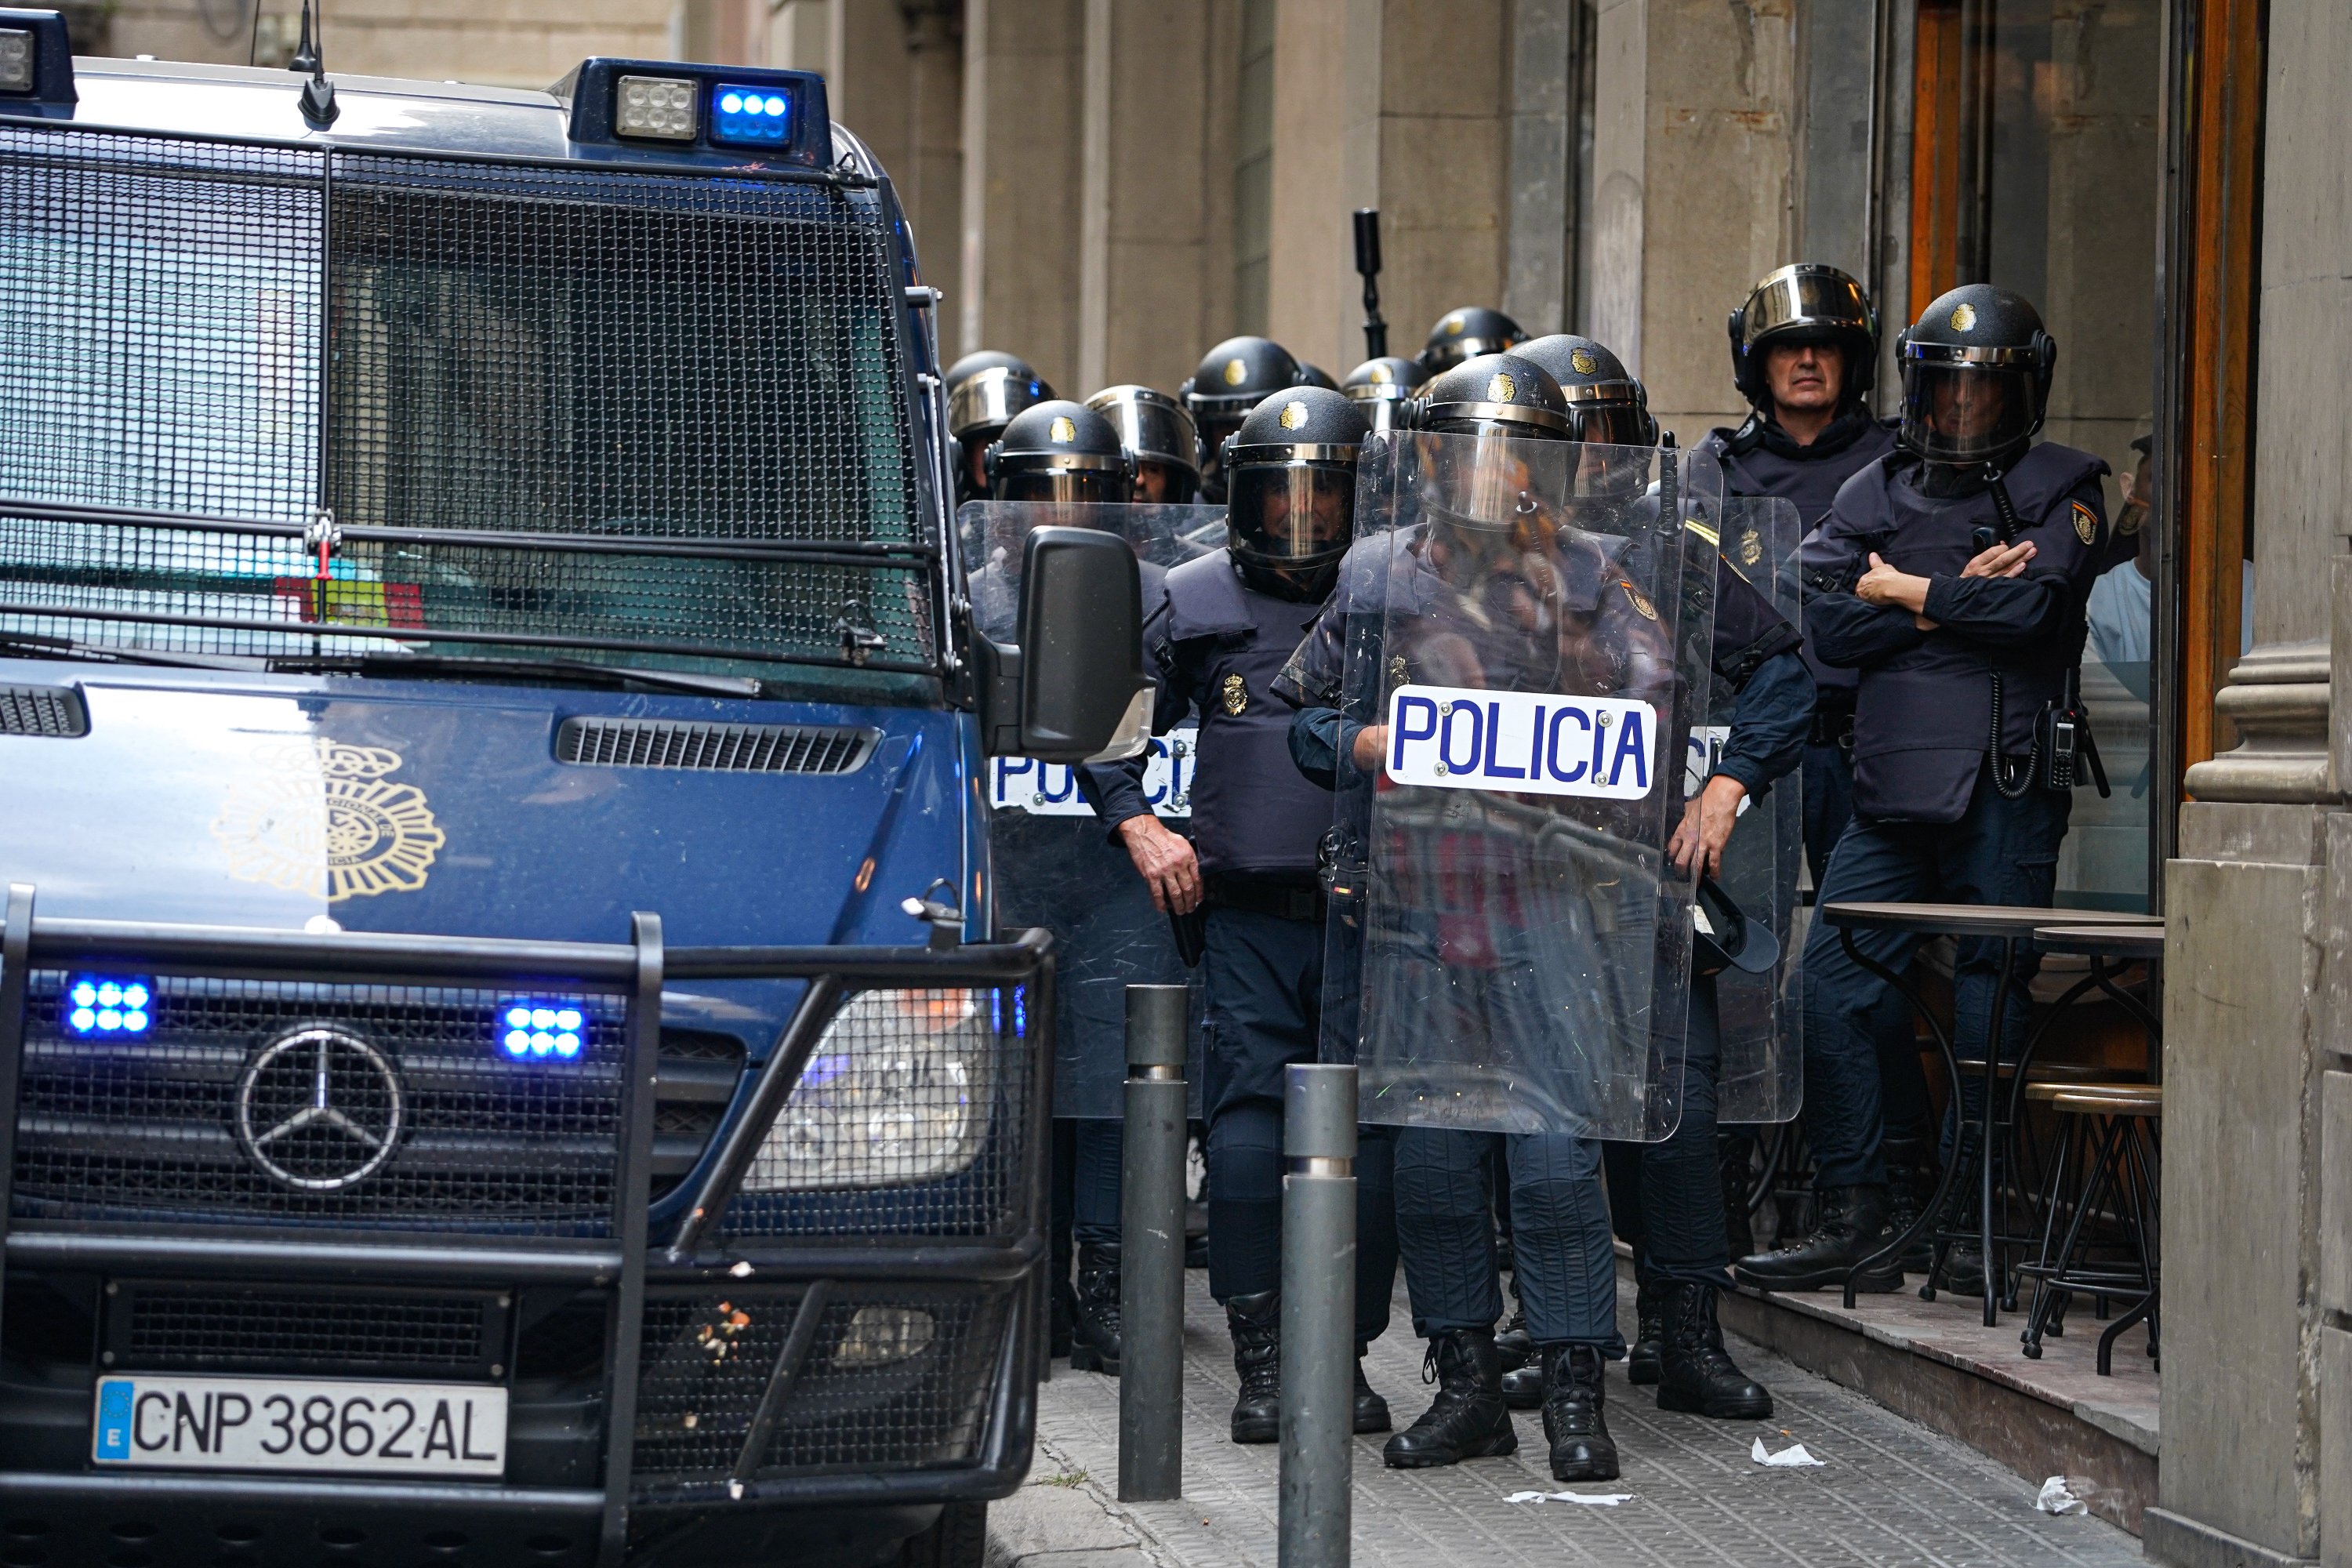 La policia espanyola recula a Catalunya: retira el reforç d'antidisturbis